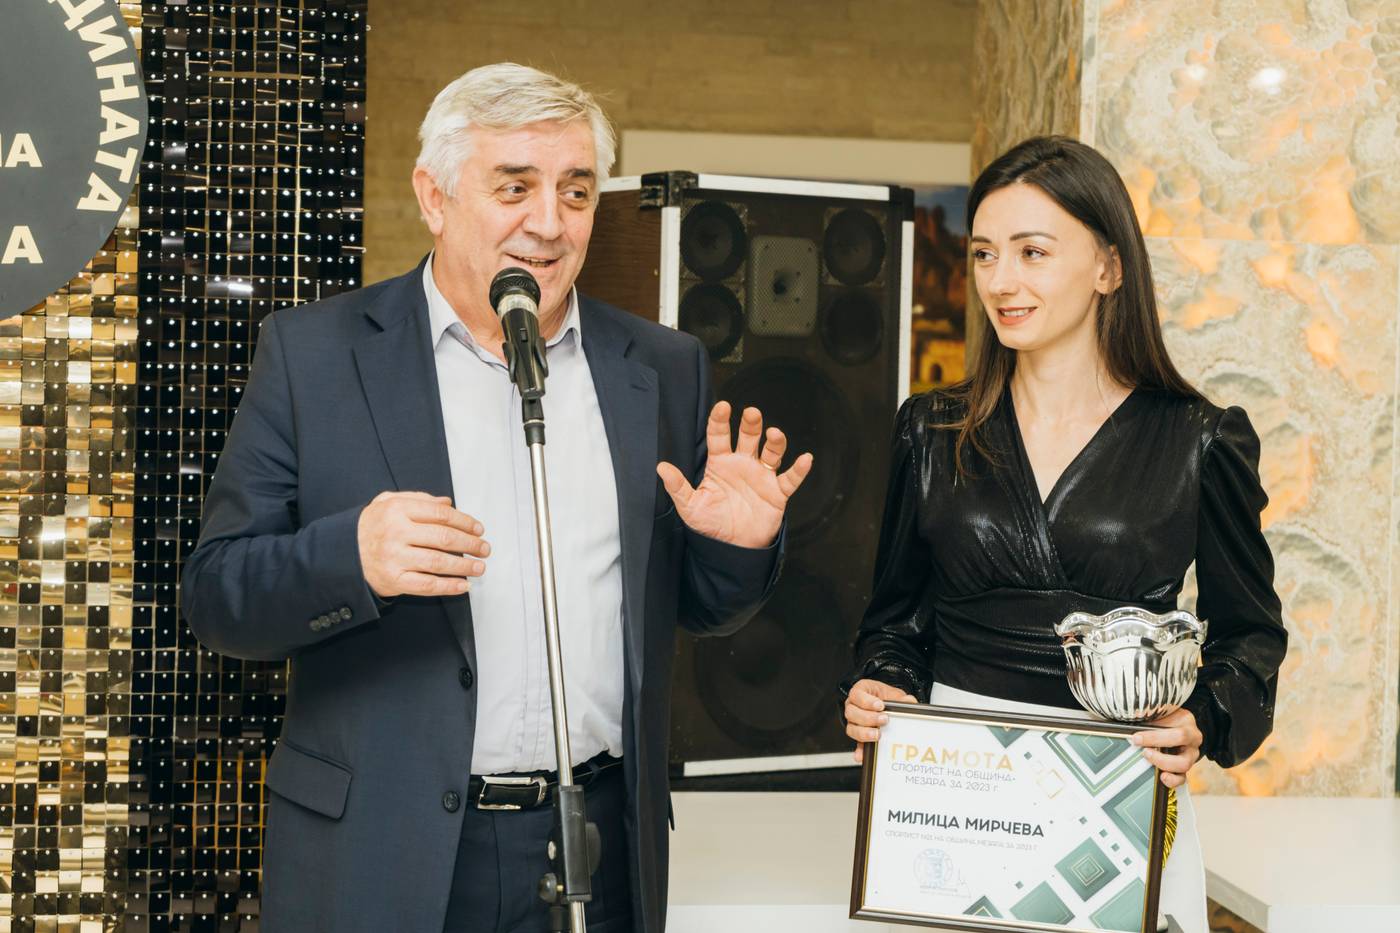 Кметът на Мездра Иван Аспарухов връчва наградата на Милица Мирчева